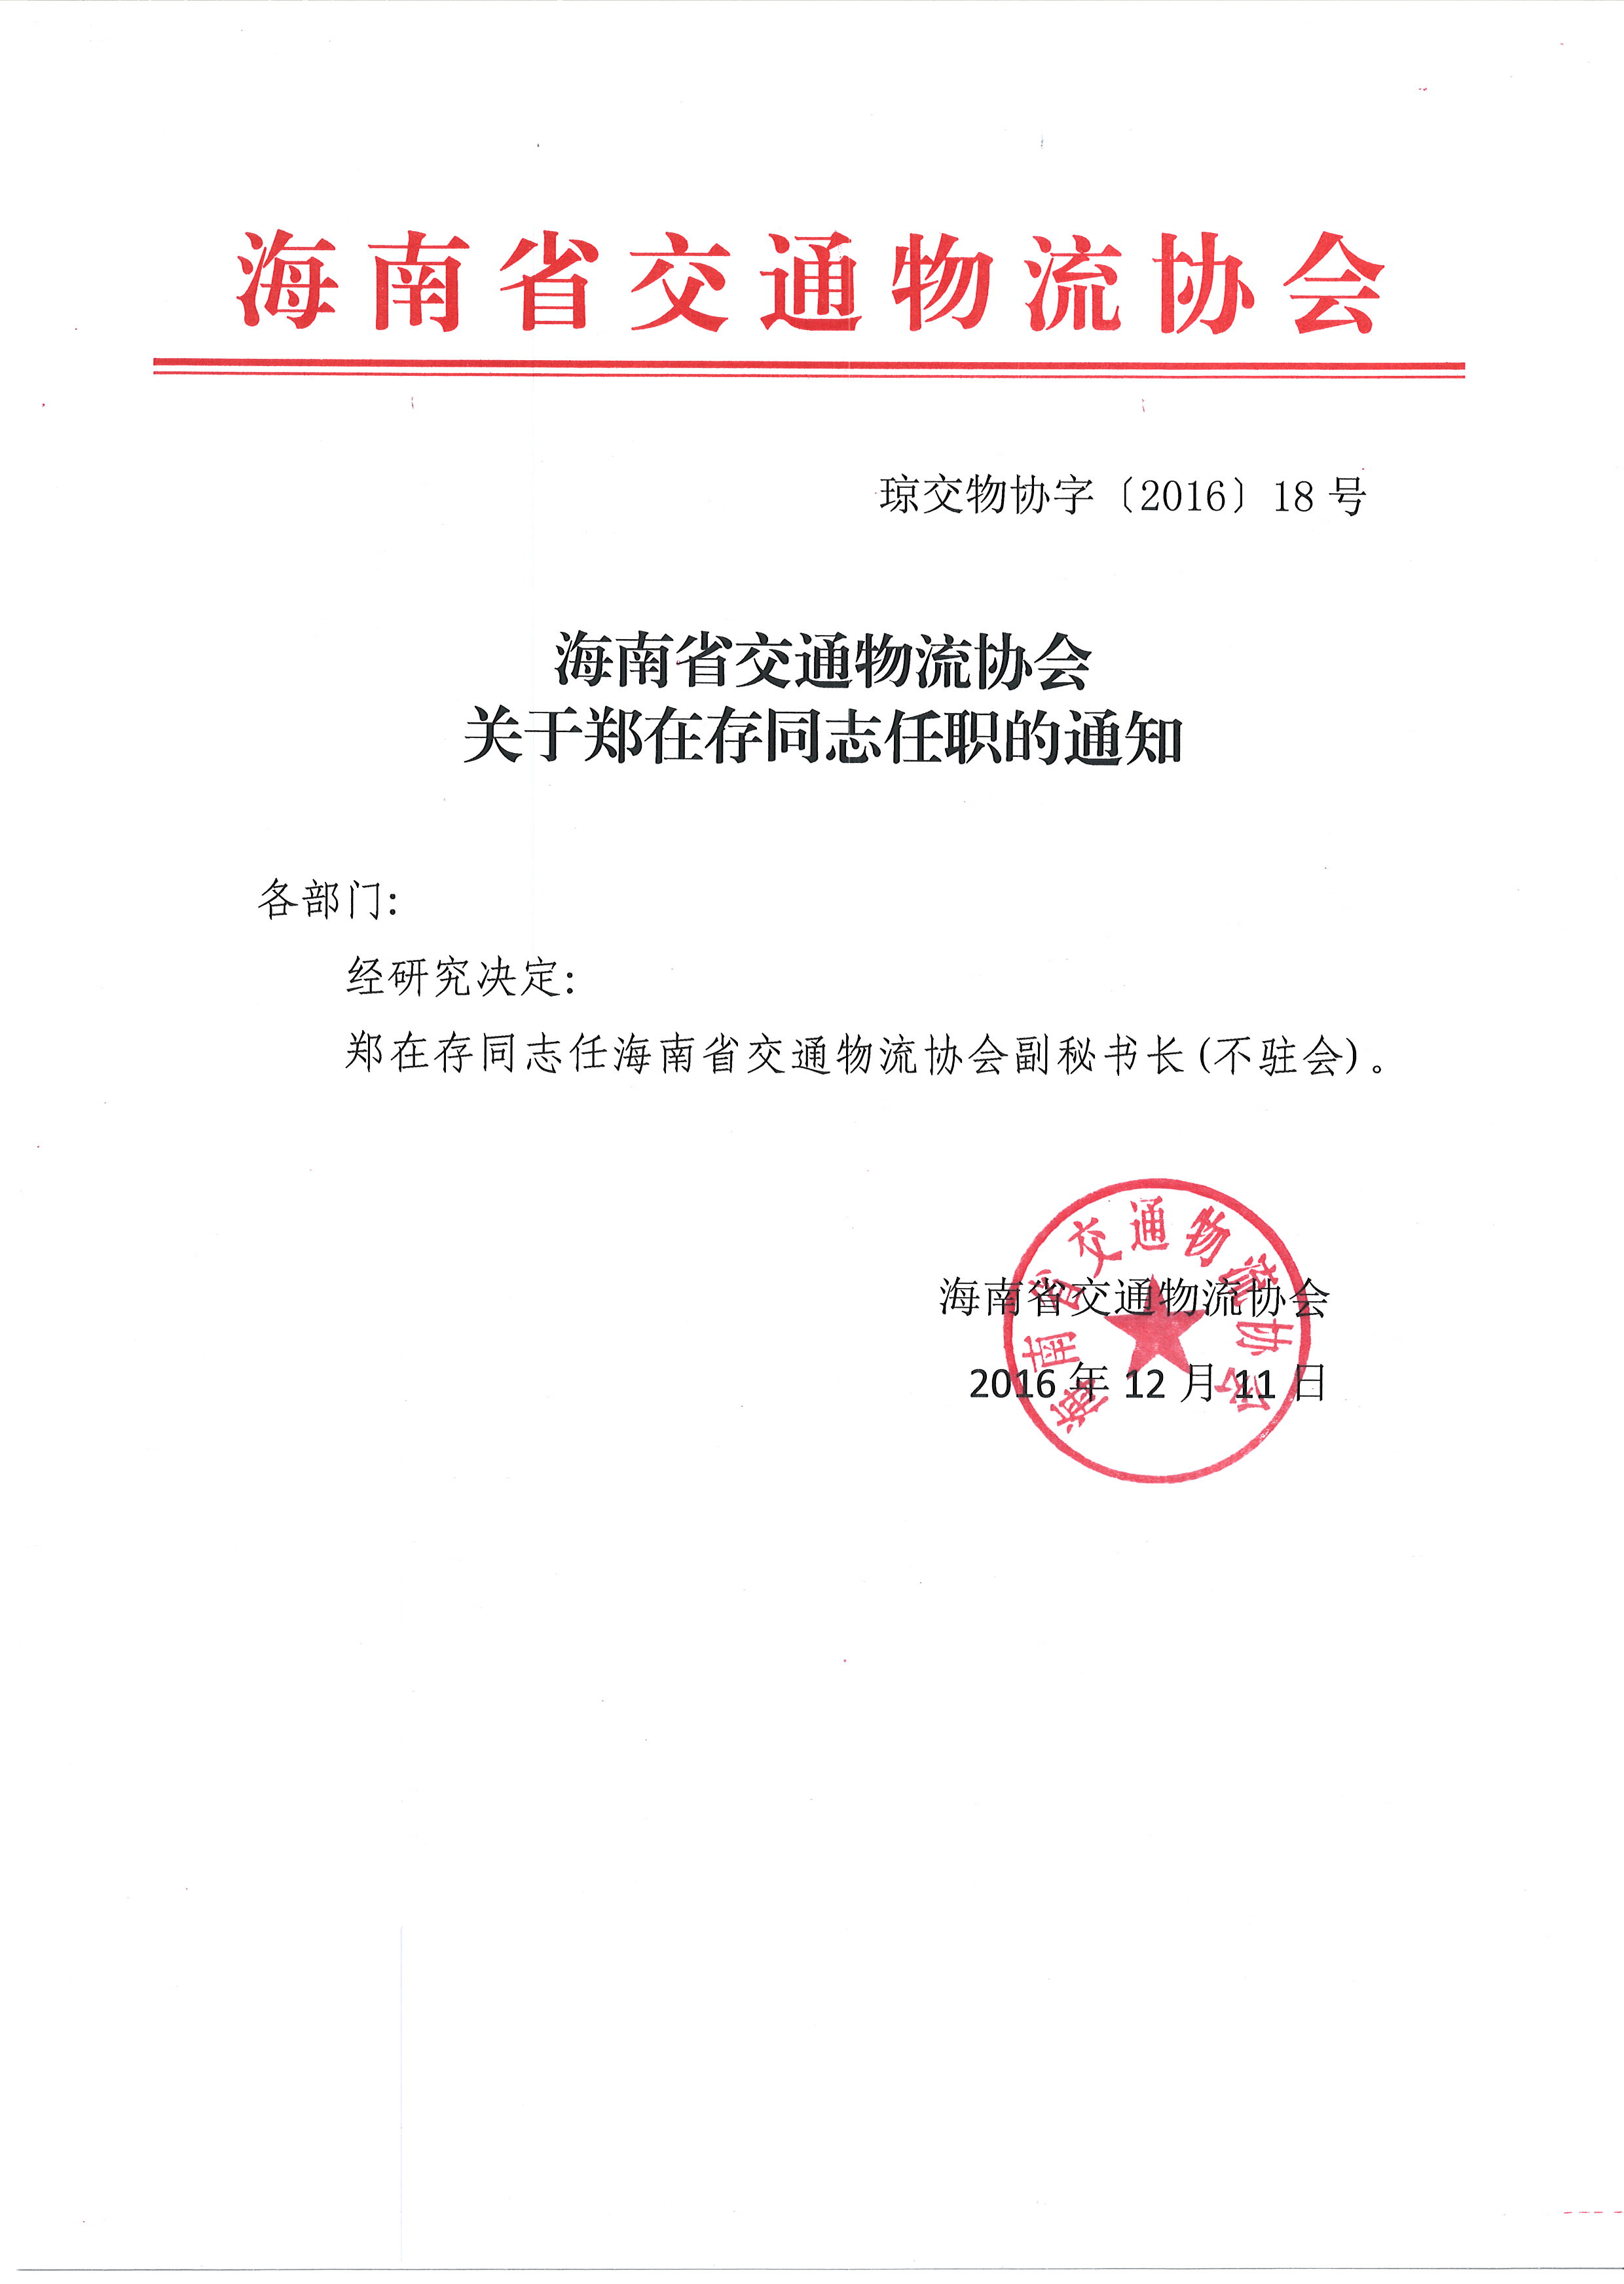 海南省交通物流协会关于郑在存同志任职的通知.JPG